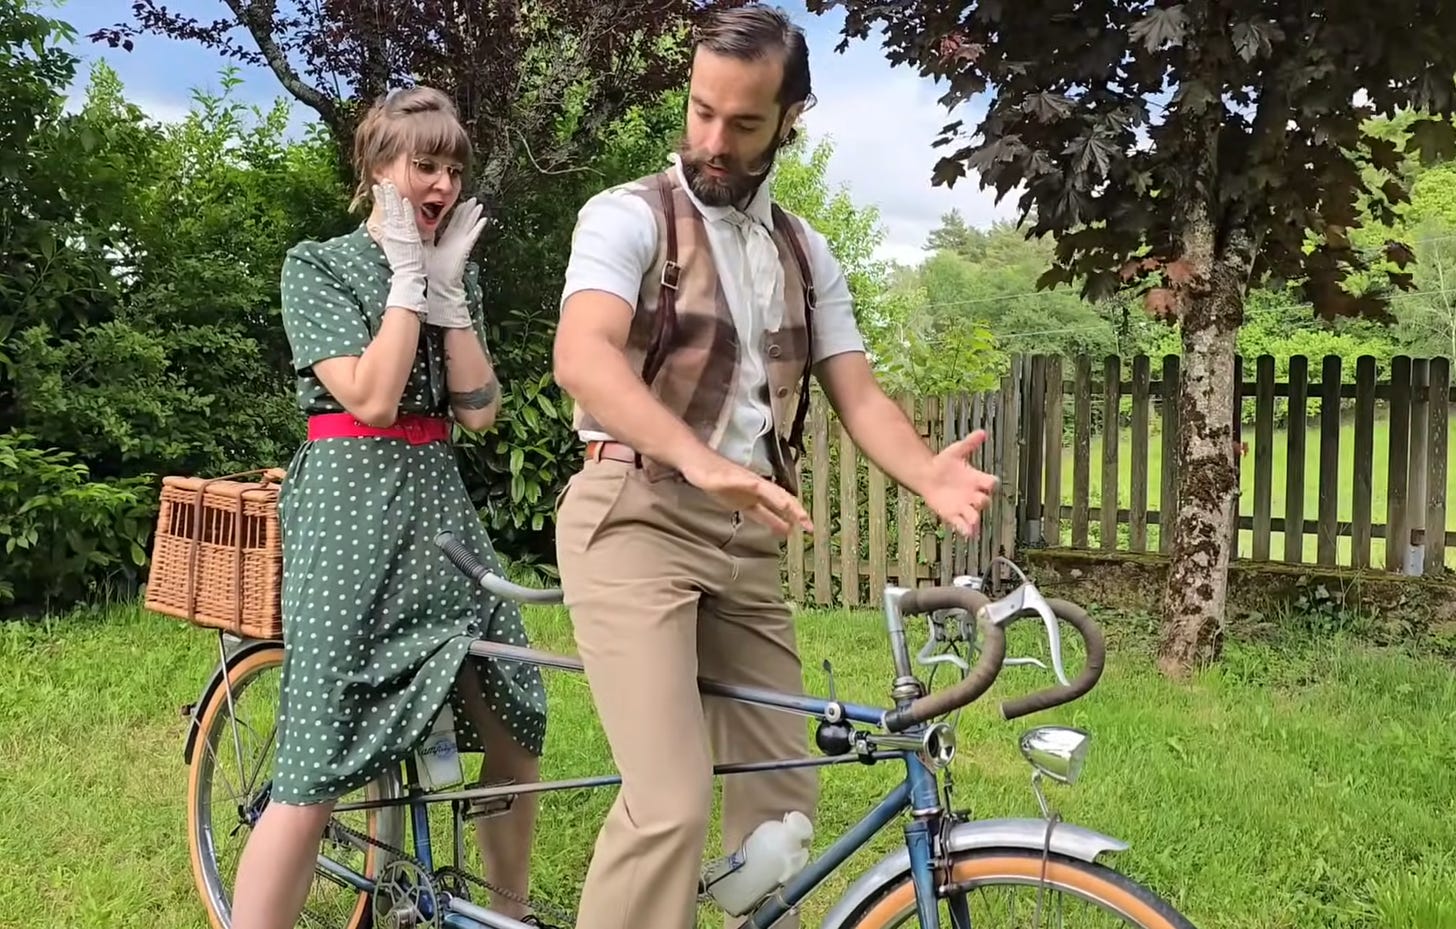 deux cyclistes habilles en tenue des annees 50 sur un velo tandem dans un jardin